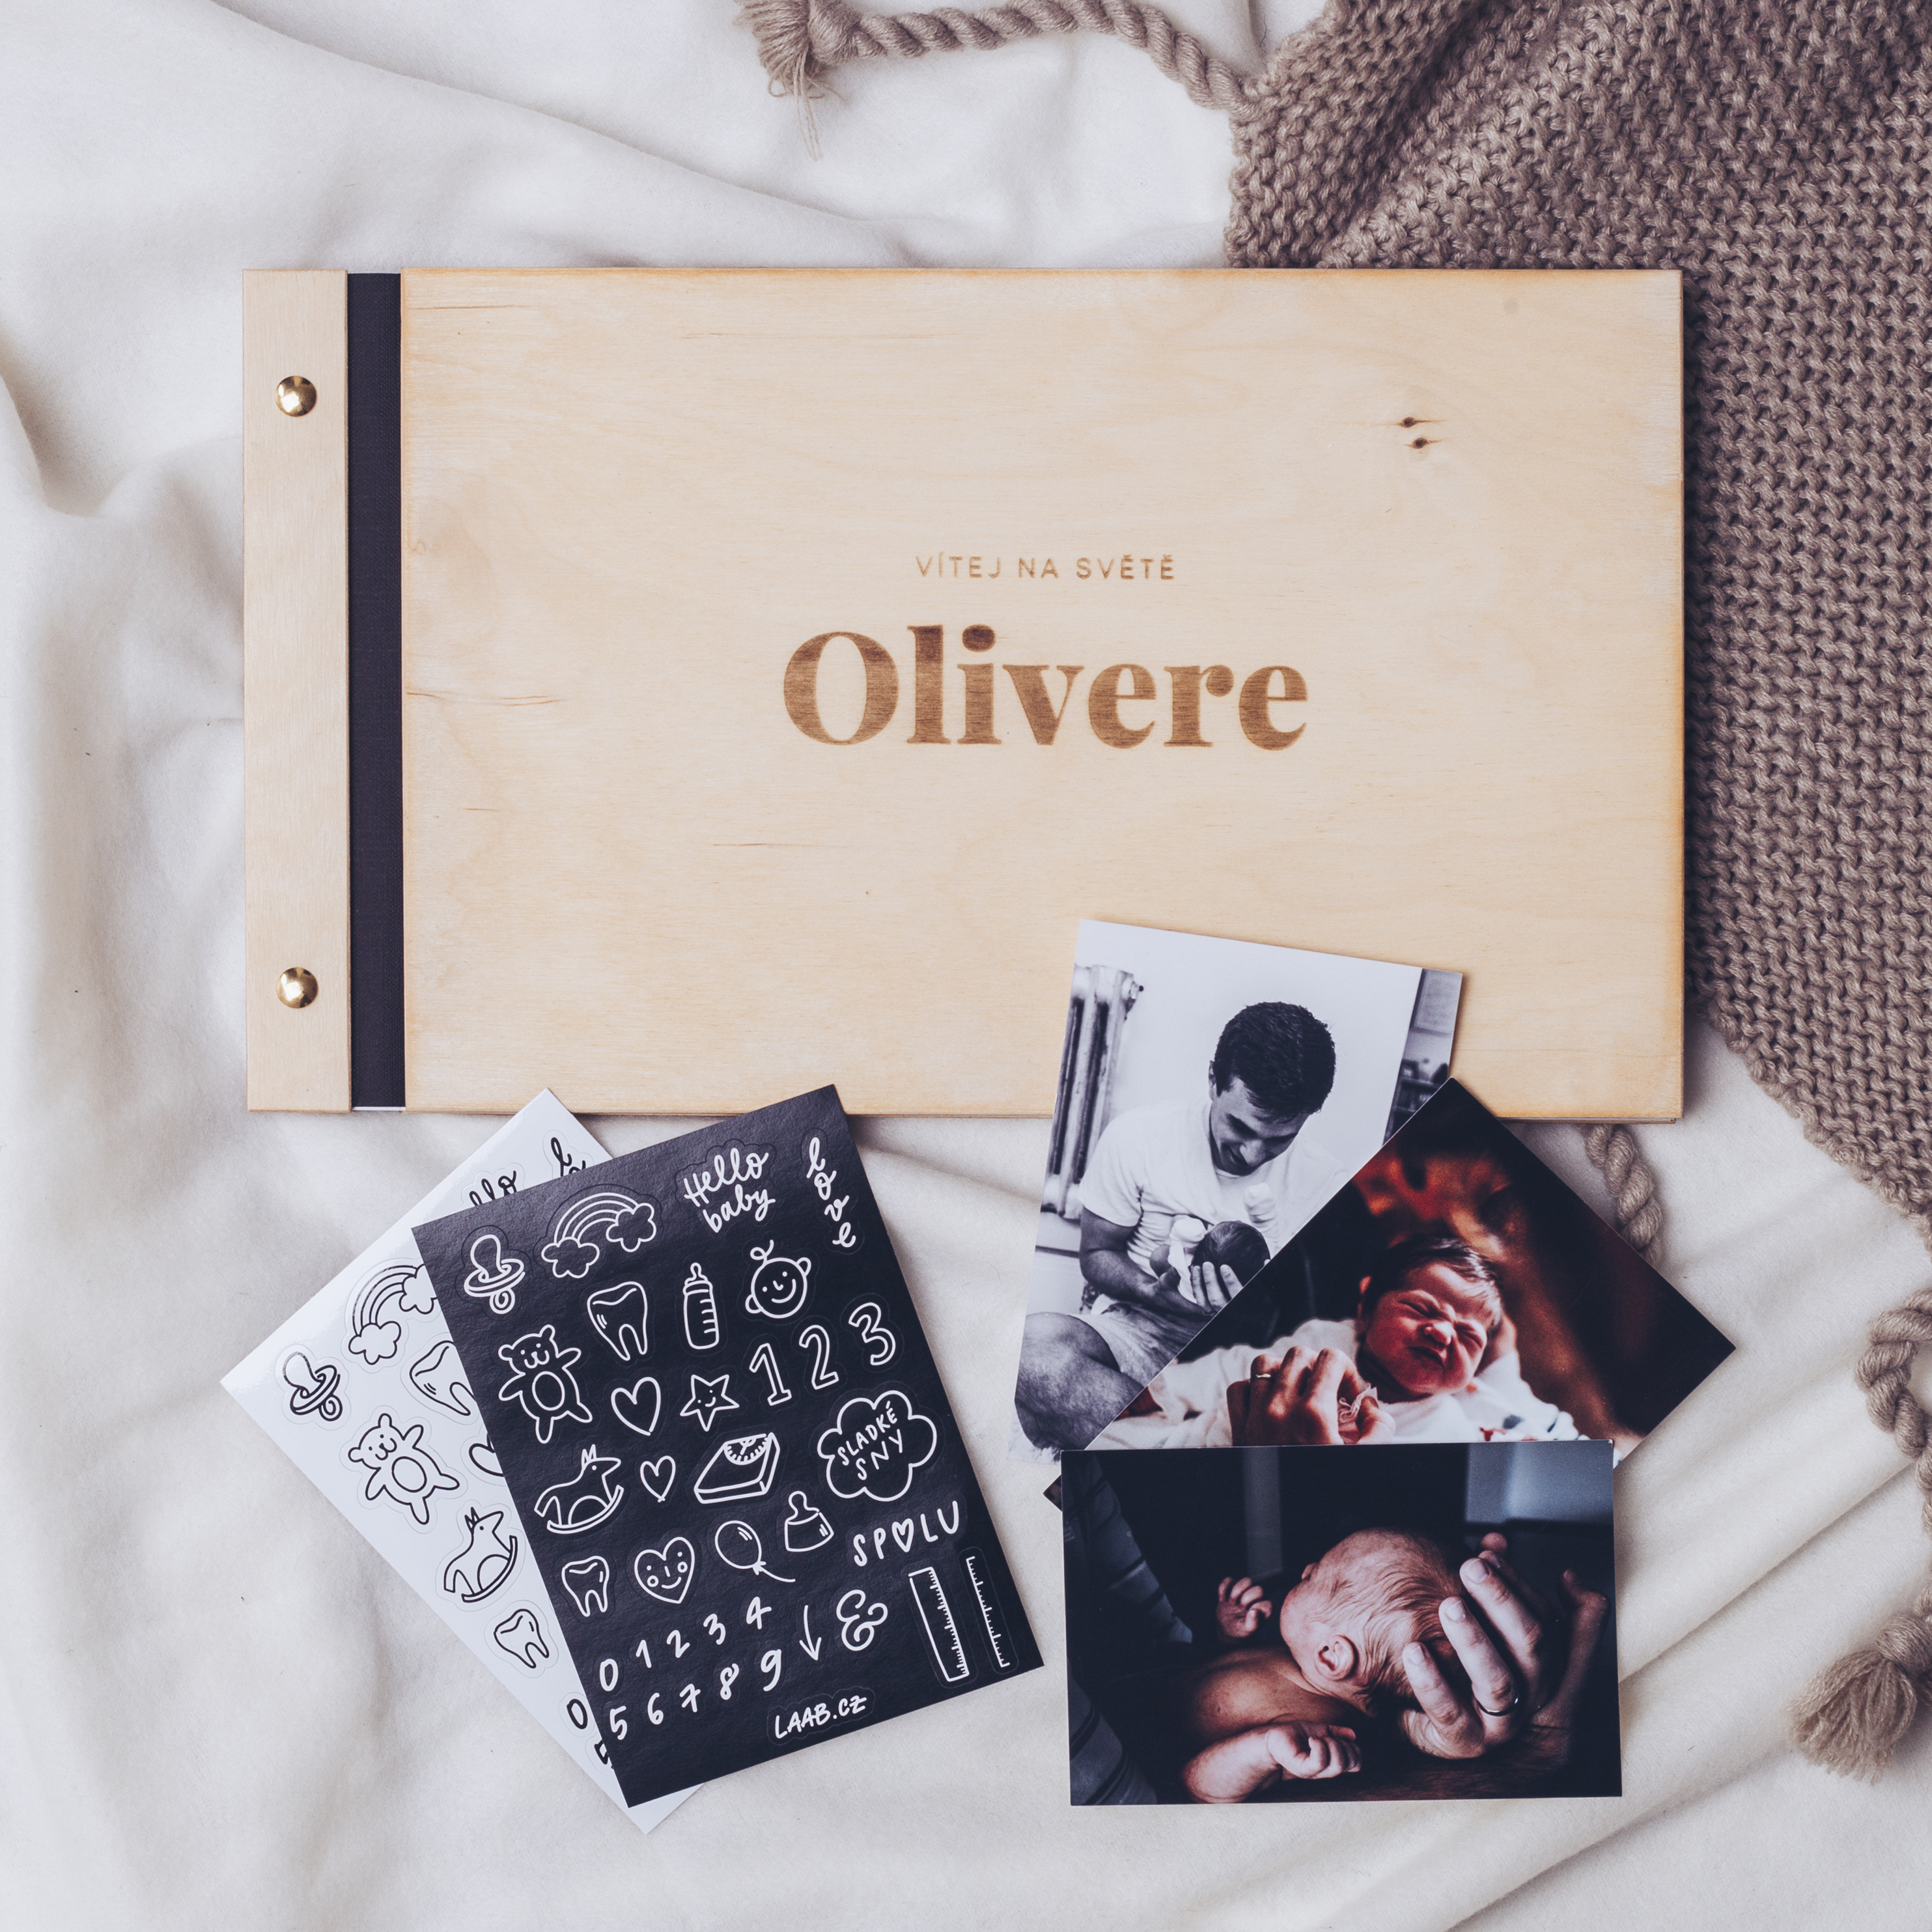 dřevěné fotoalbum Oliver: FORMÁT FOTOALBA na výšku, POČET LISTŮ 20 s prokladovými listy, FORMÁT FOTOALBA na šířku, POČET LISTŮ 35 s prokladovými listy, BARVA LISTŮ bílá